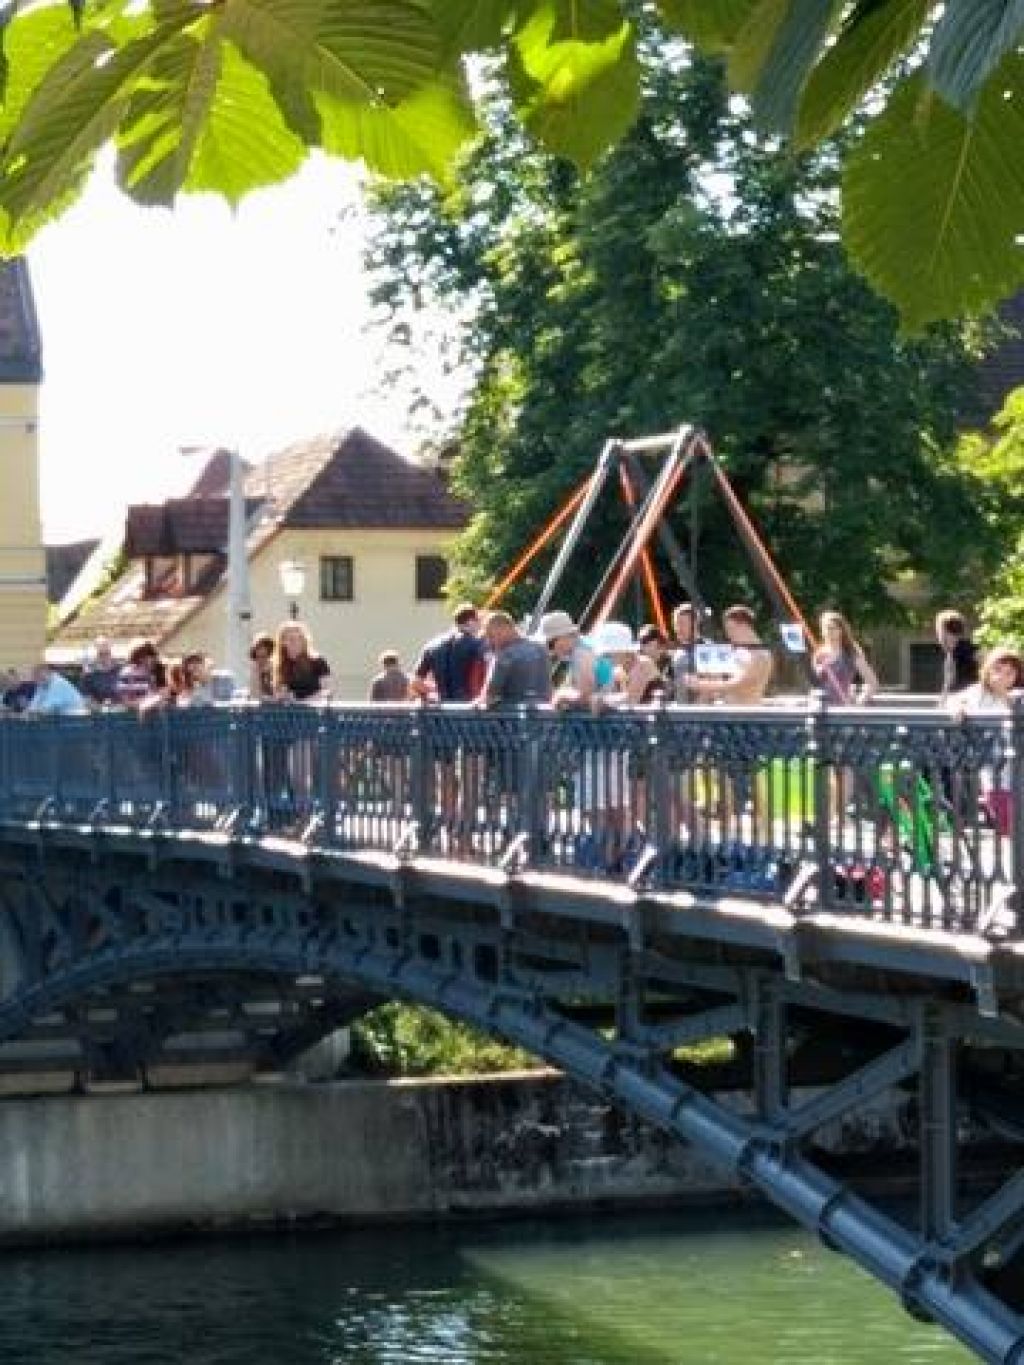 FOTO in VIDEO: V središču mesta skakali z mosta